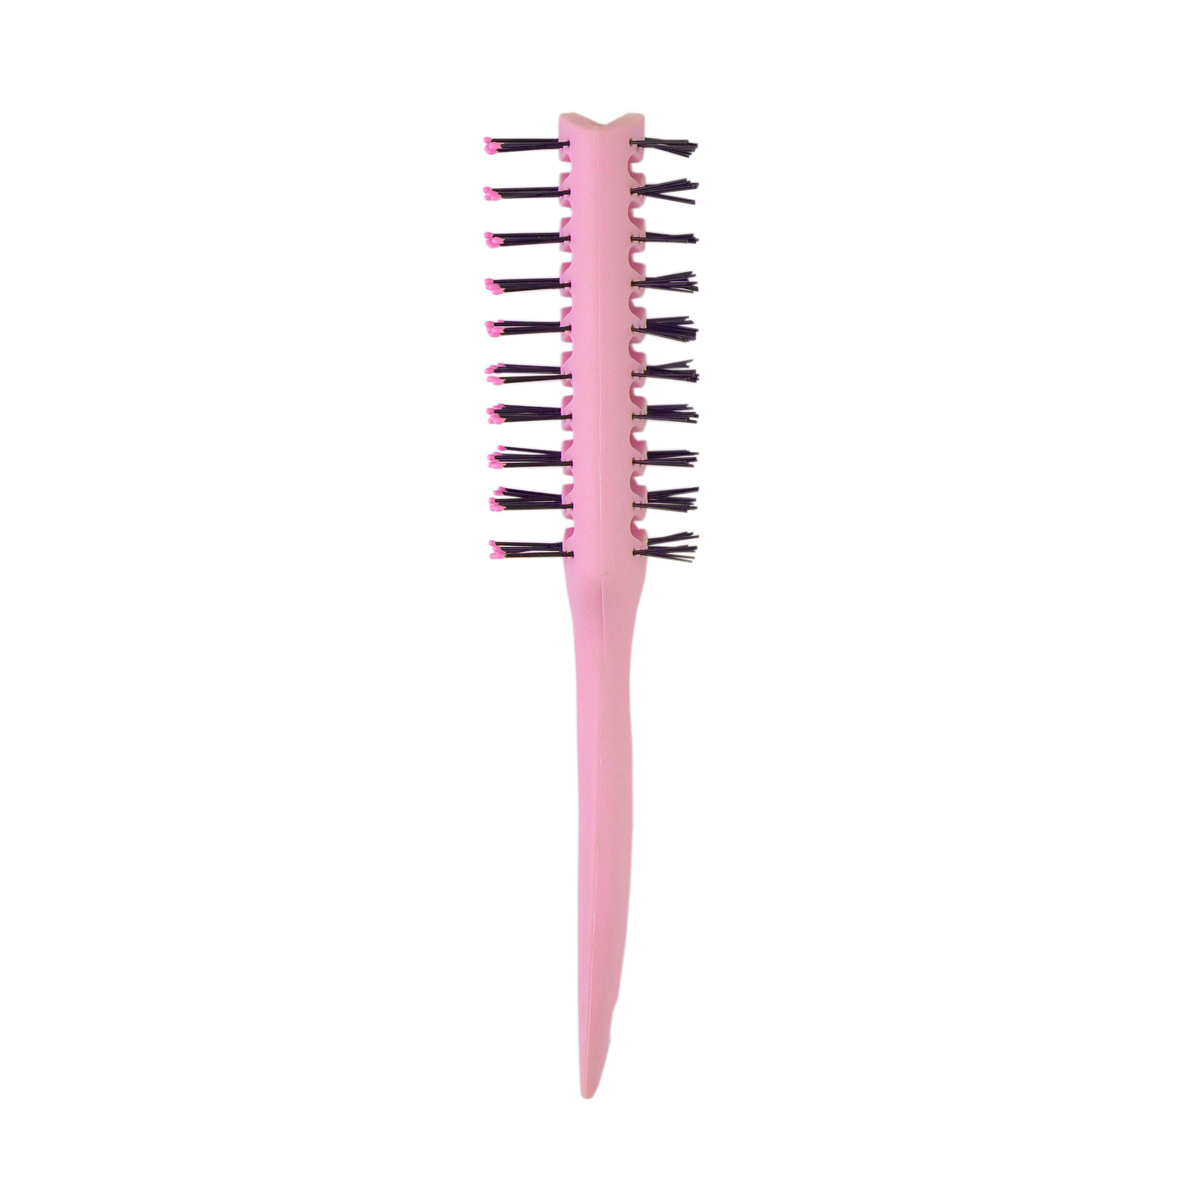 Расчёска вентиляционная LEI 170 розовая расческа для шерсти малая 6 х 6 см розовая